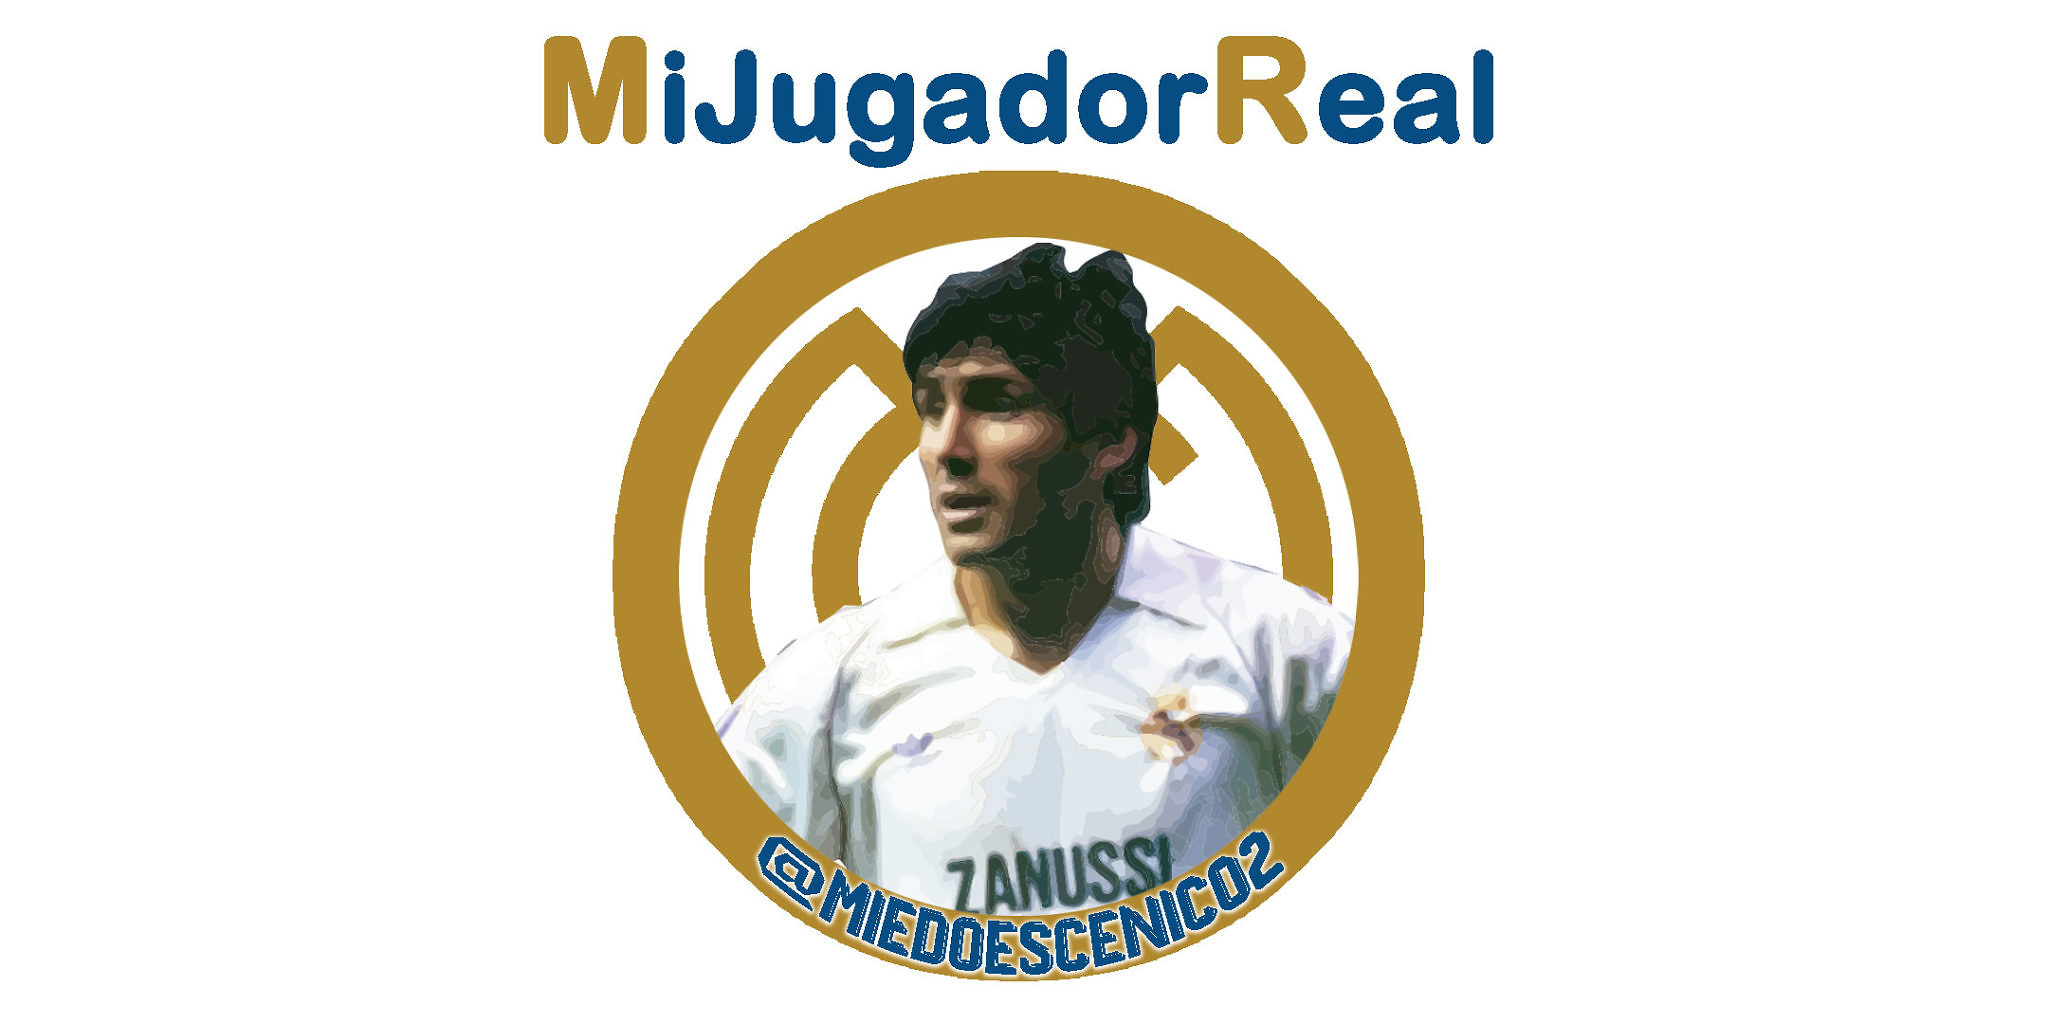 #MiJugadorReal | @MiedoEscenico2